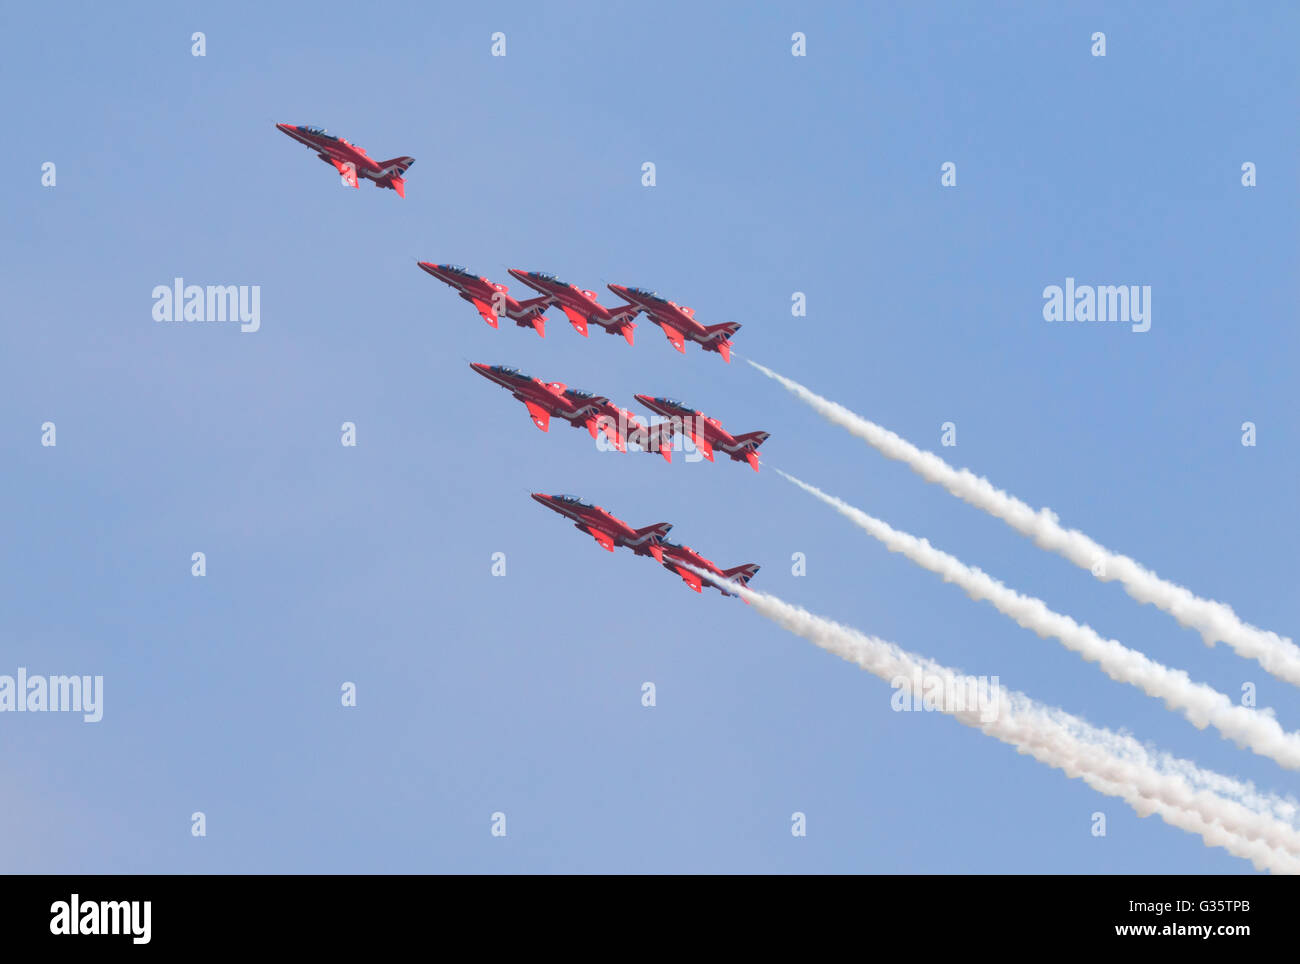 Les flèches rouges RAF aerobatic team volant en formation contre un ciel bleu, meeting aérien de Duxford, Royaume-Uni ; concept de leadership Banque D'Images